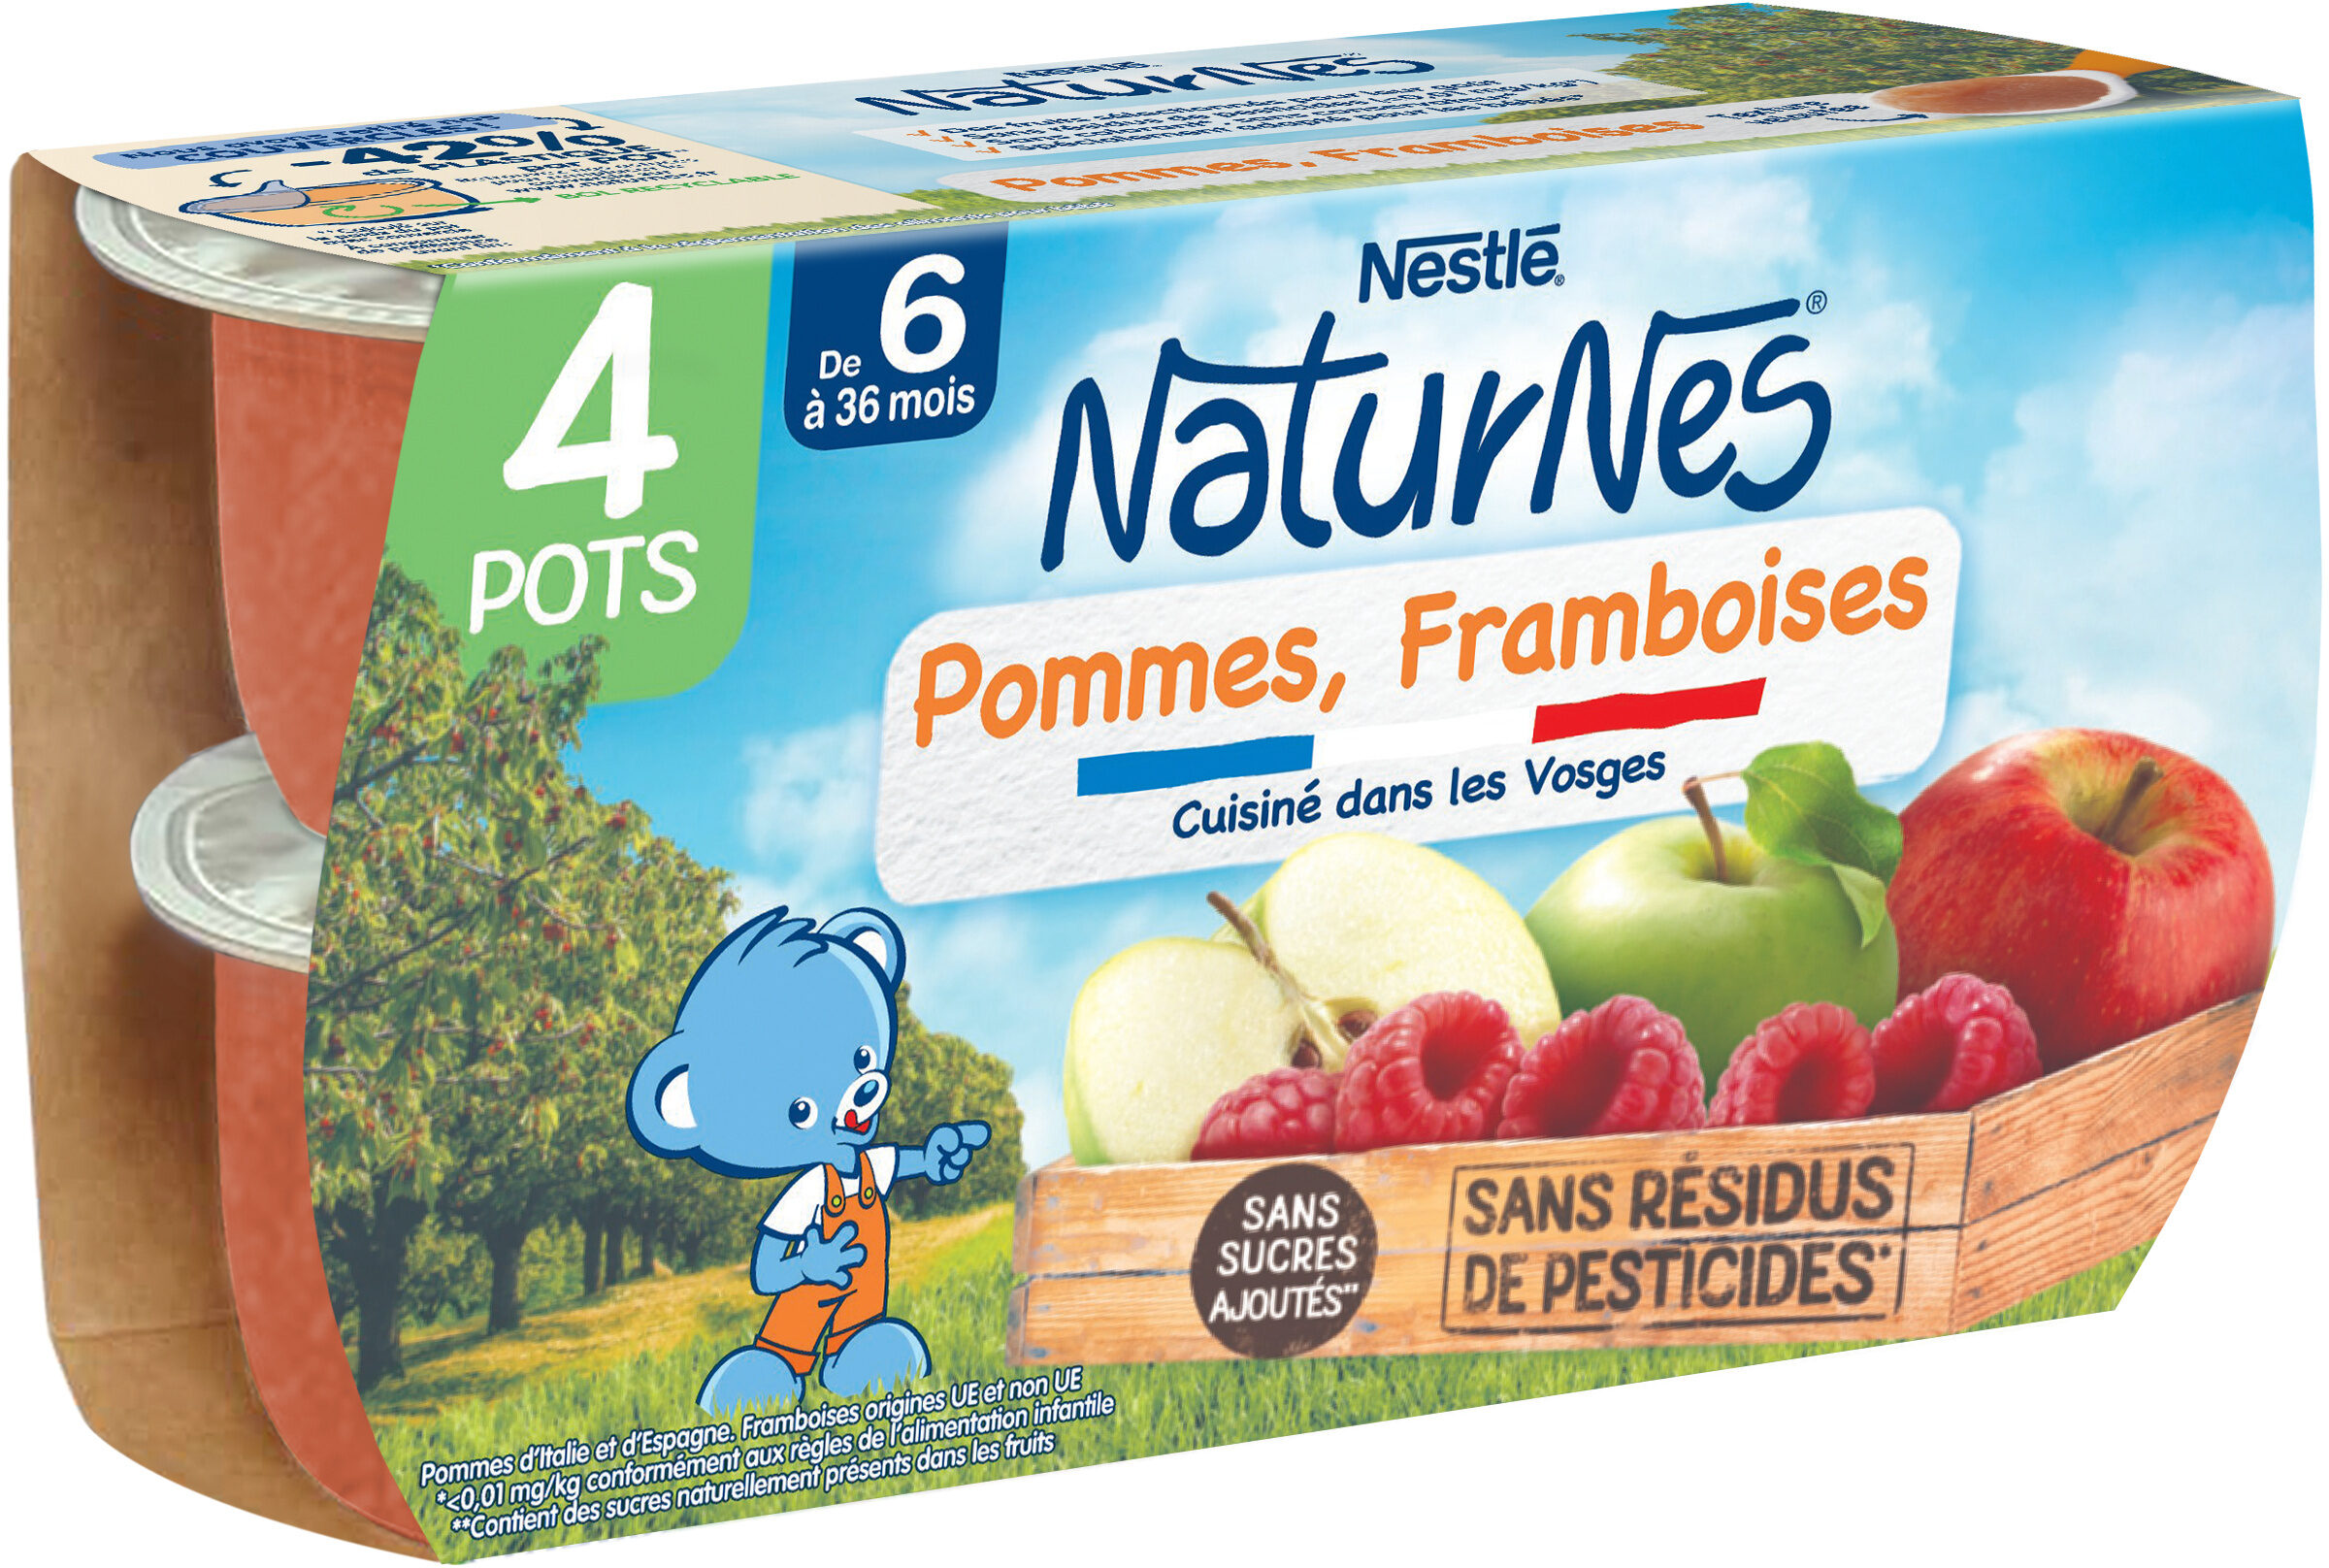 NESTLE NATURNES Purée bébé Pommes Framboises -4x130g -Dès 6 mois - نتاج - fr